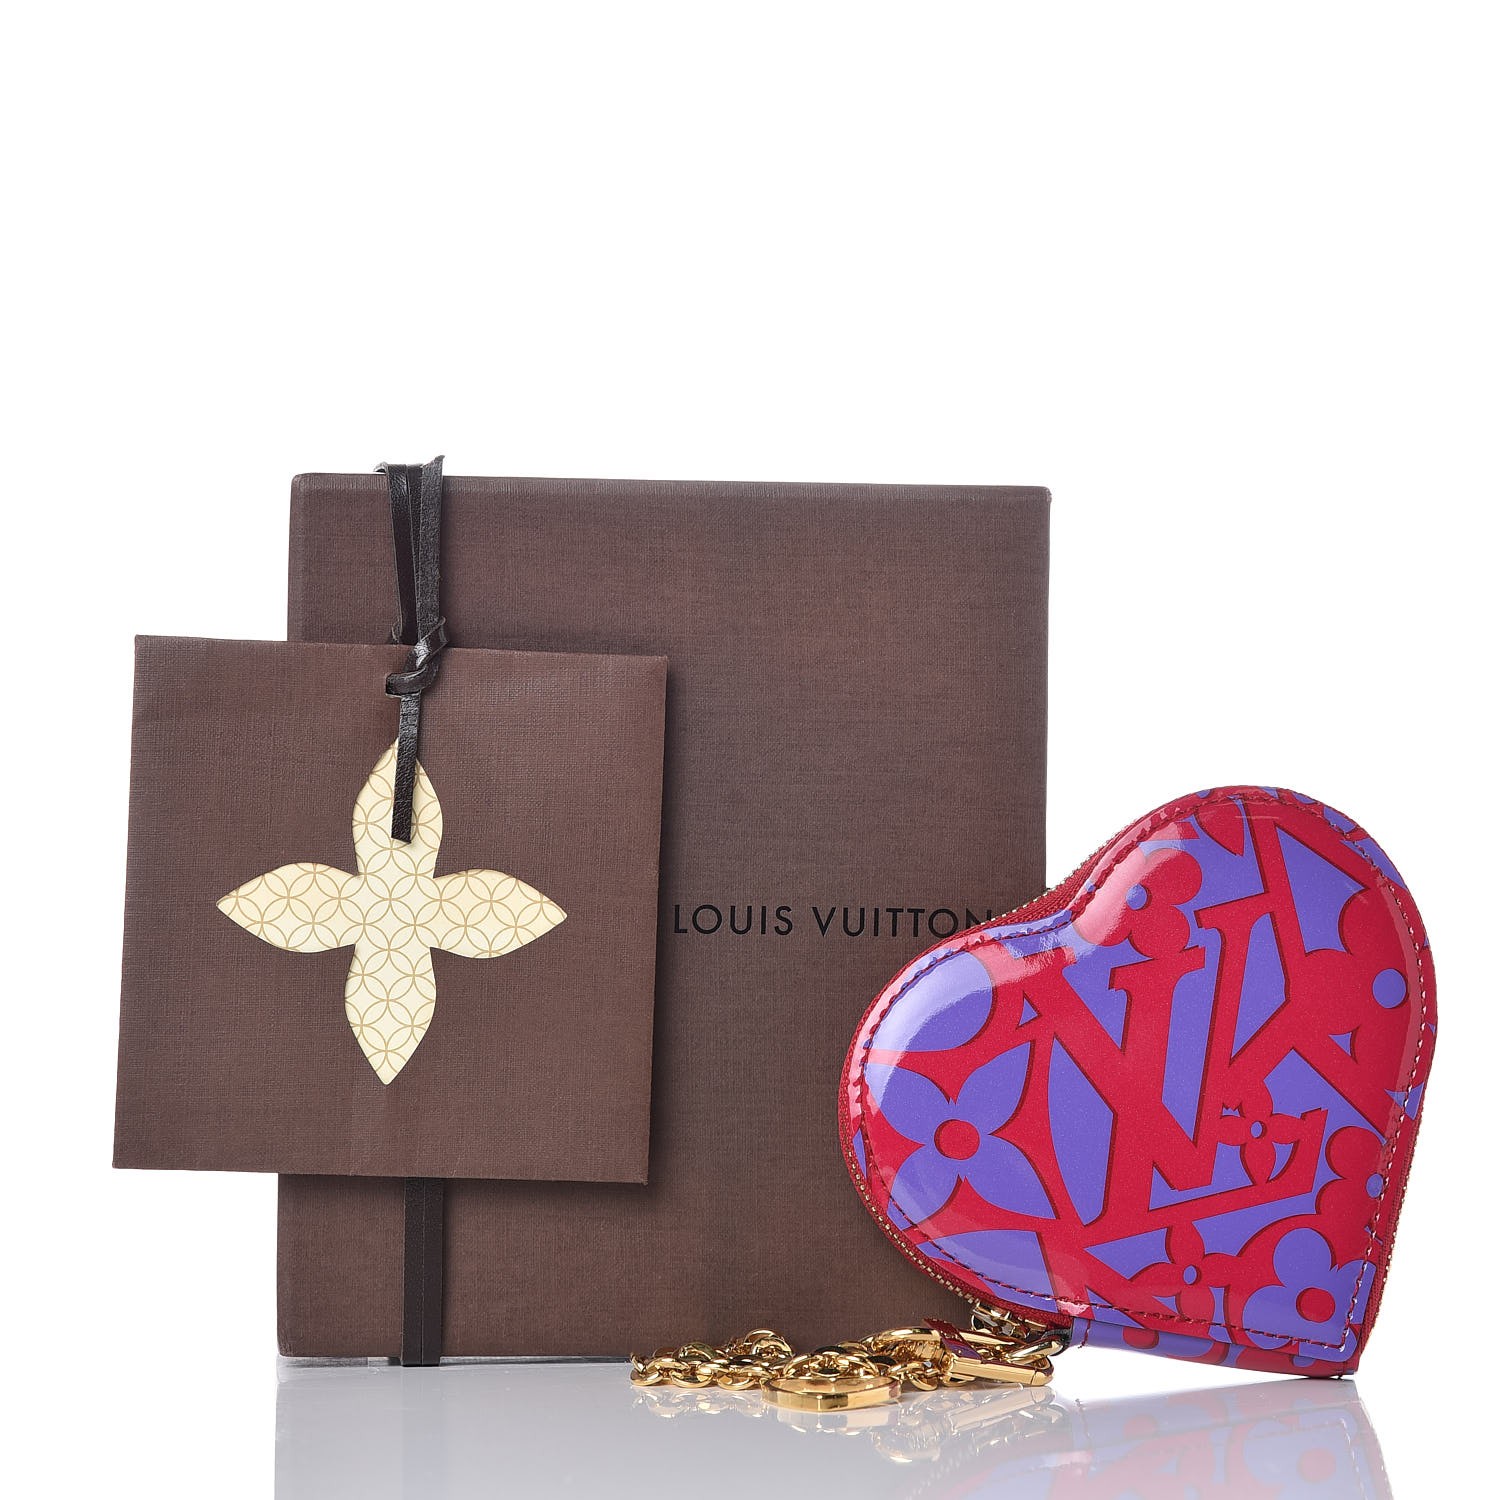 Authentic Louis Vuitton Sweet Monogram In My Heart Hoop Earrings